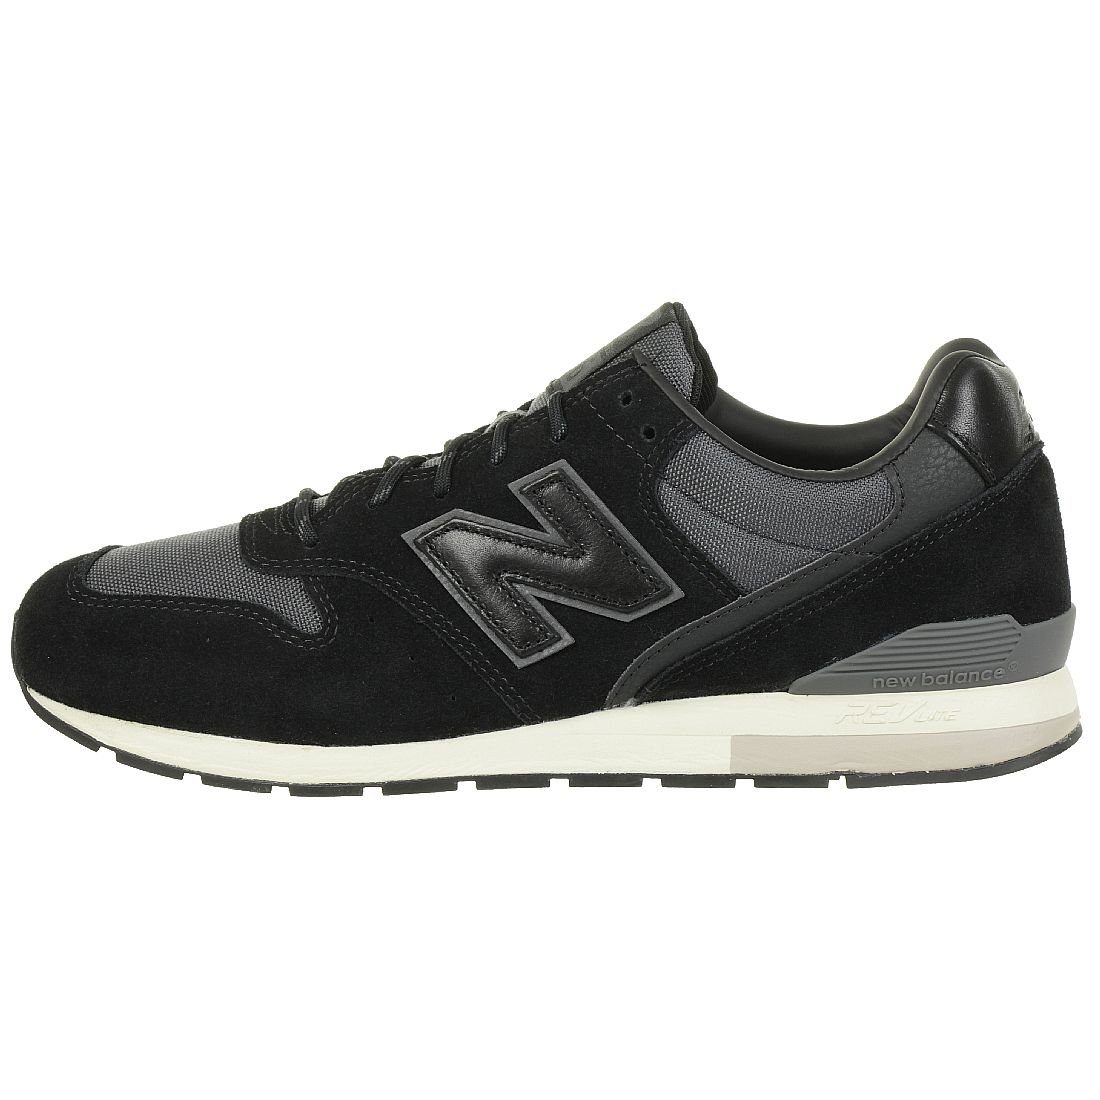 New Balance »MRL 996« Sneaker online kaufen | OTTO